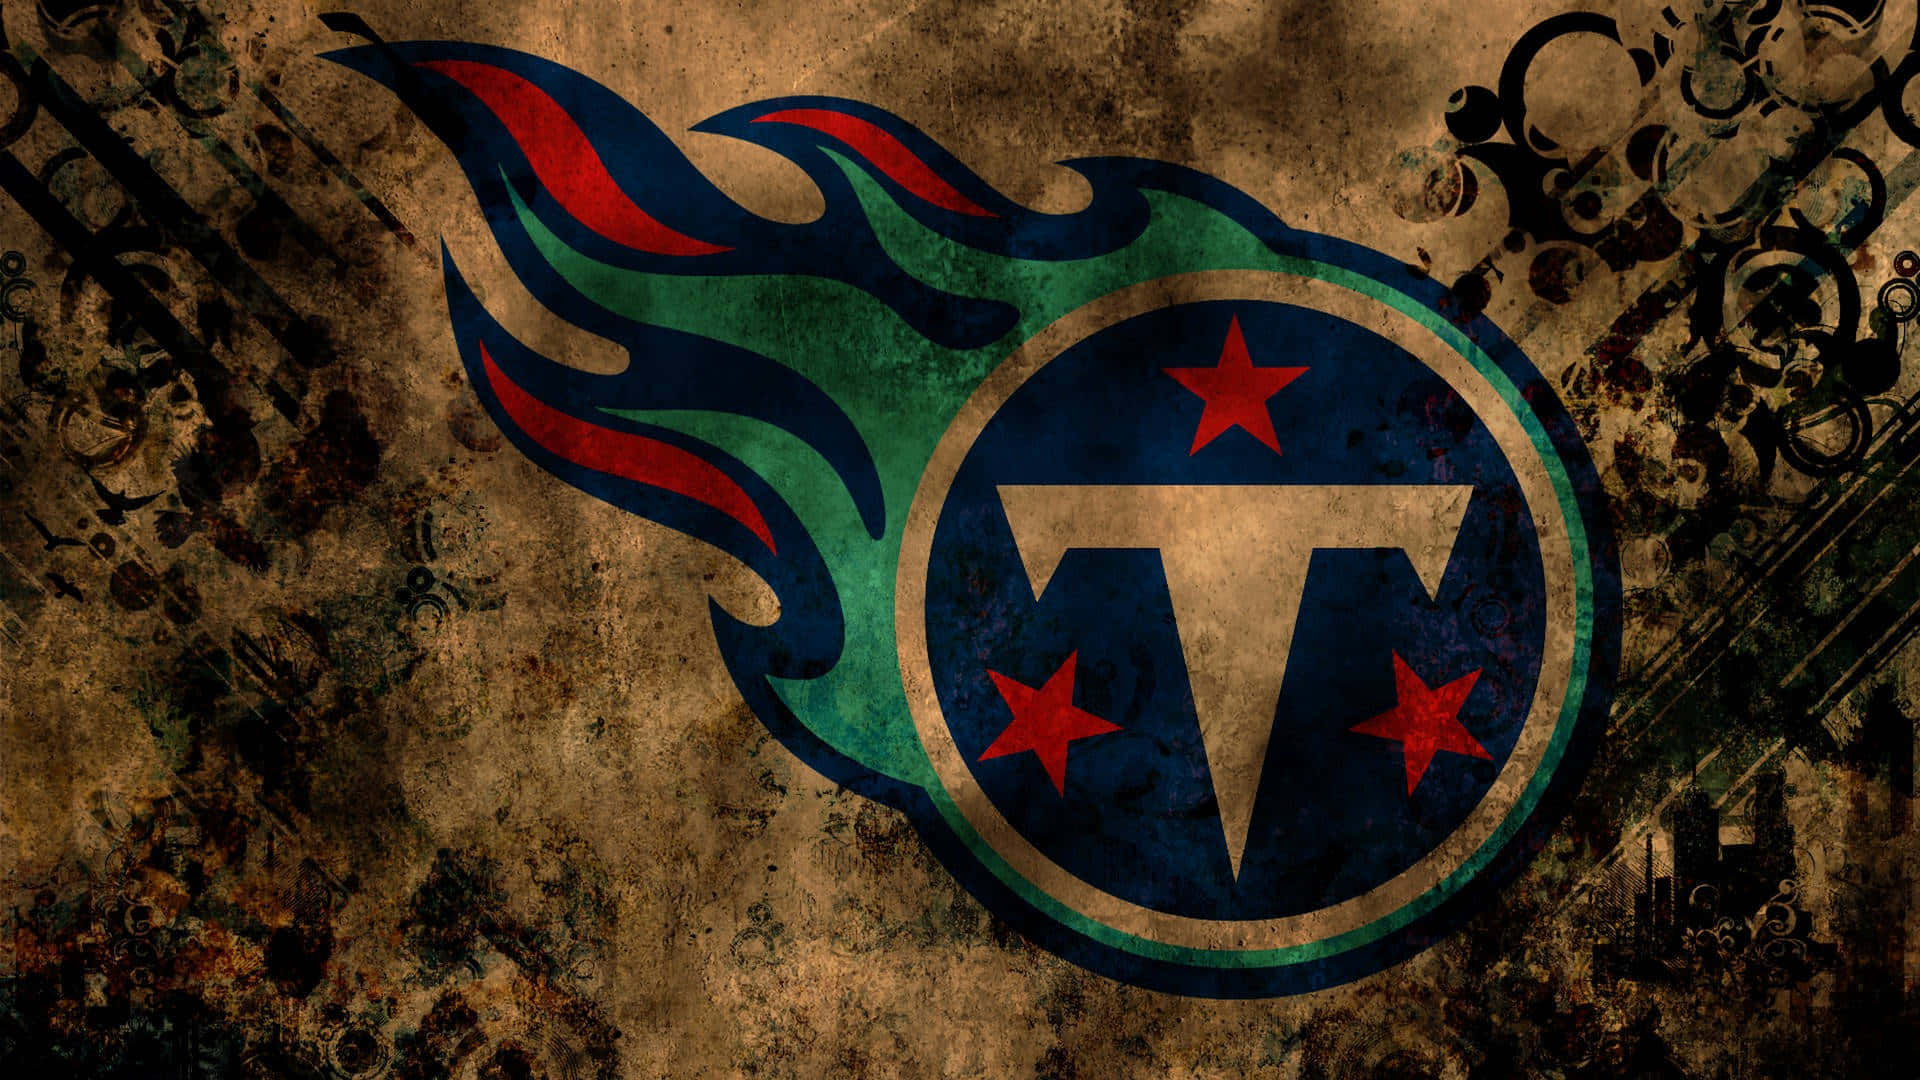 Vis din ånd for din yndlings NFL-hold - Tennessee Titans! Wallpaper